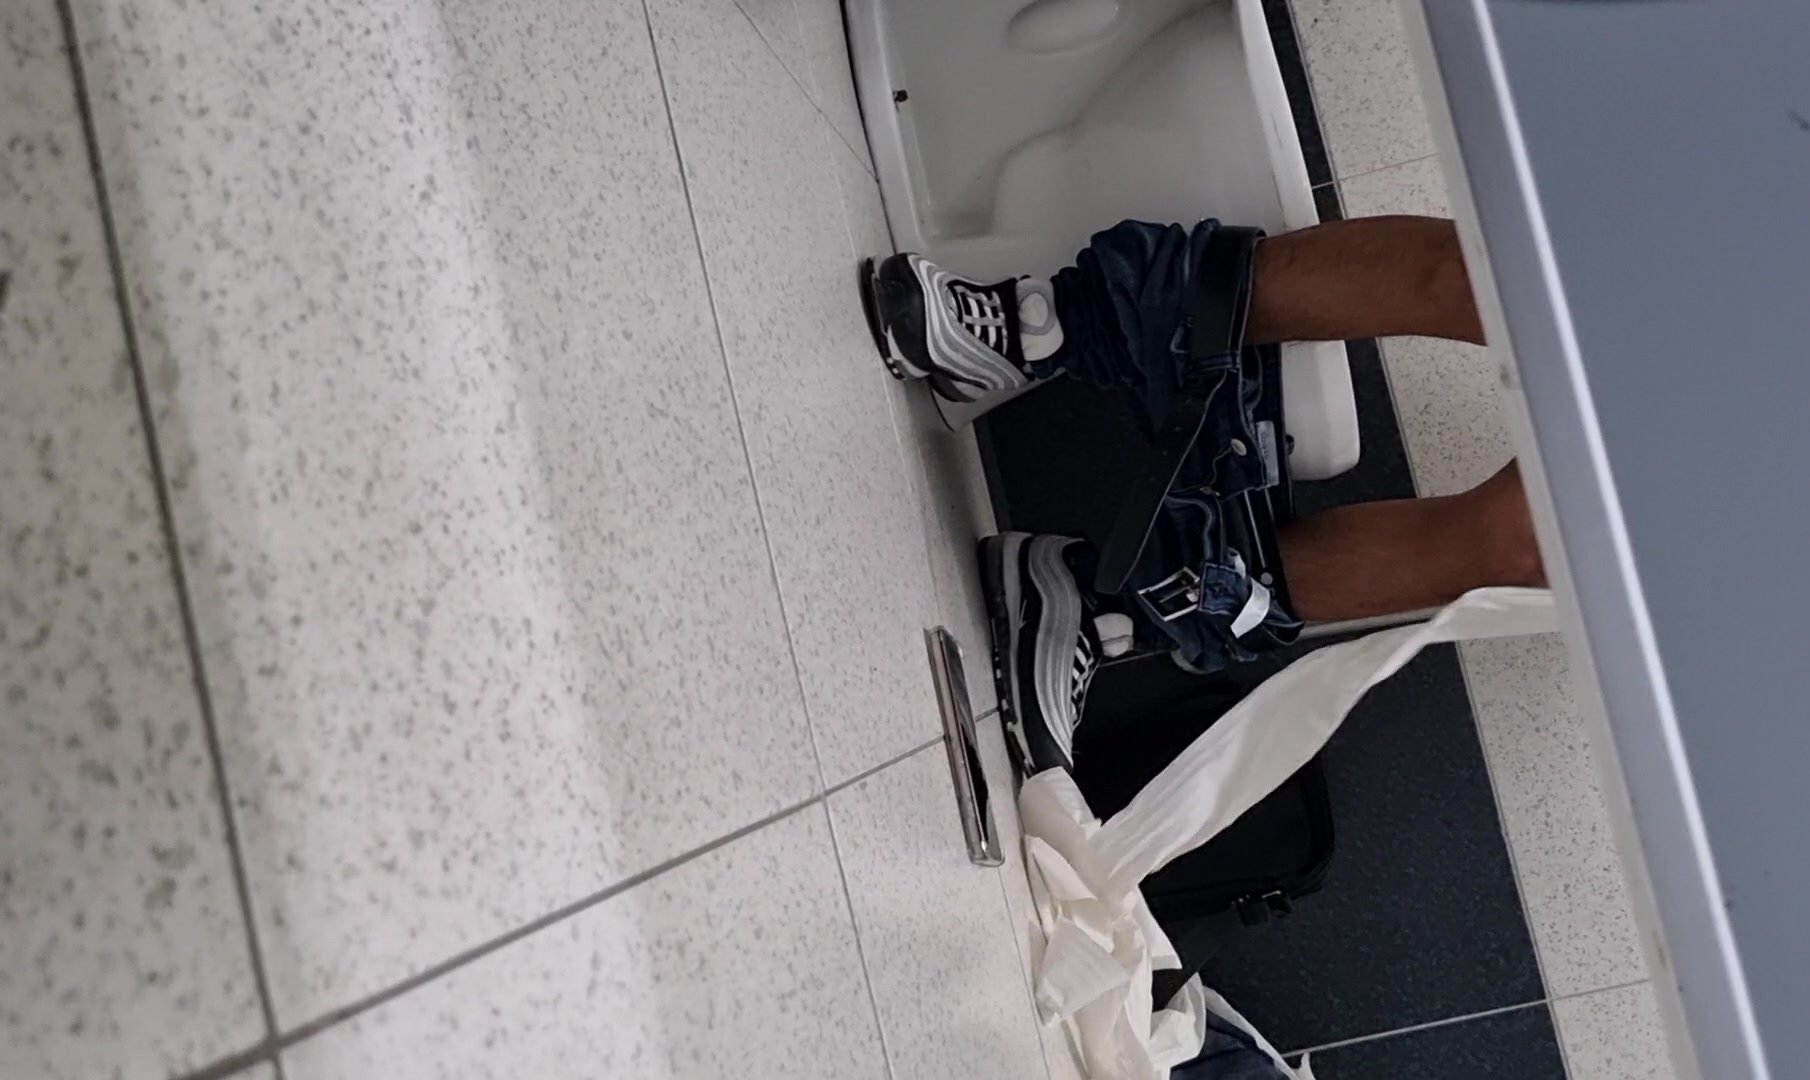 spycam in toilete-guy str8, 5